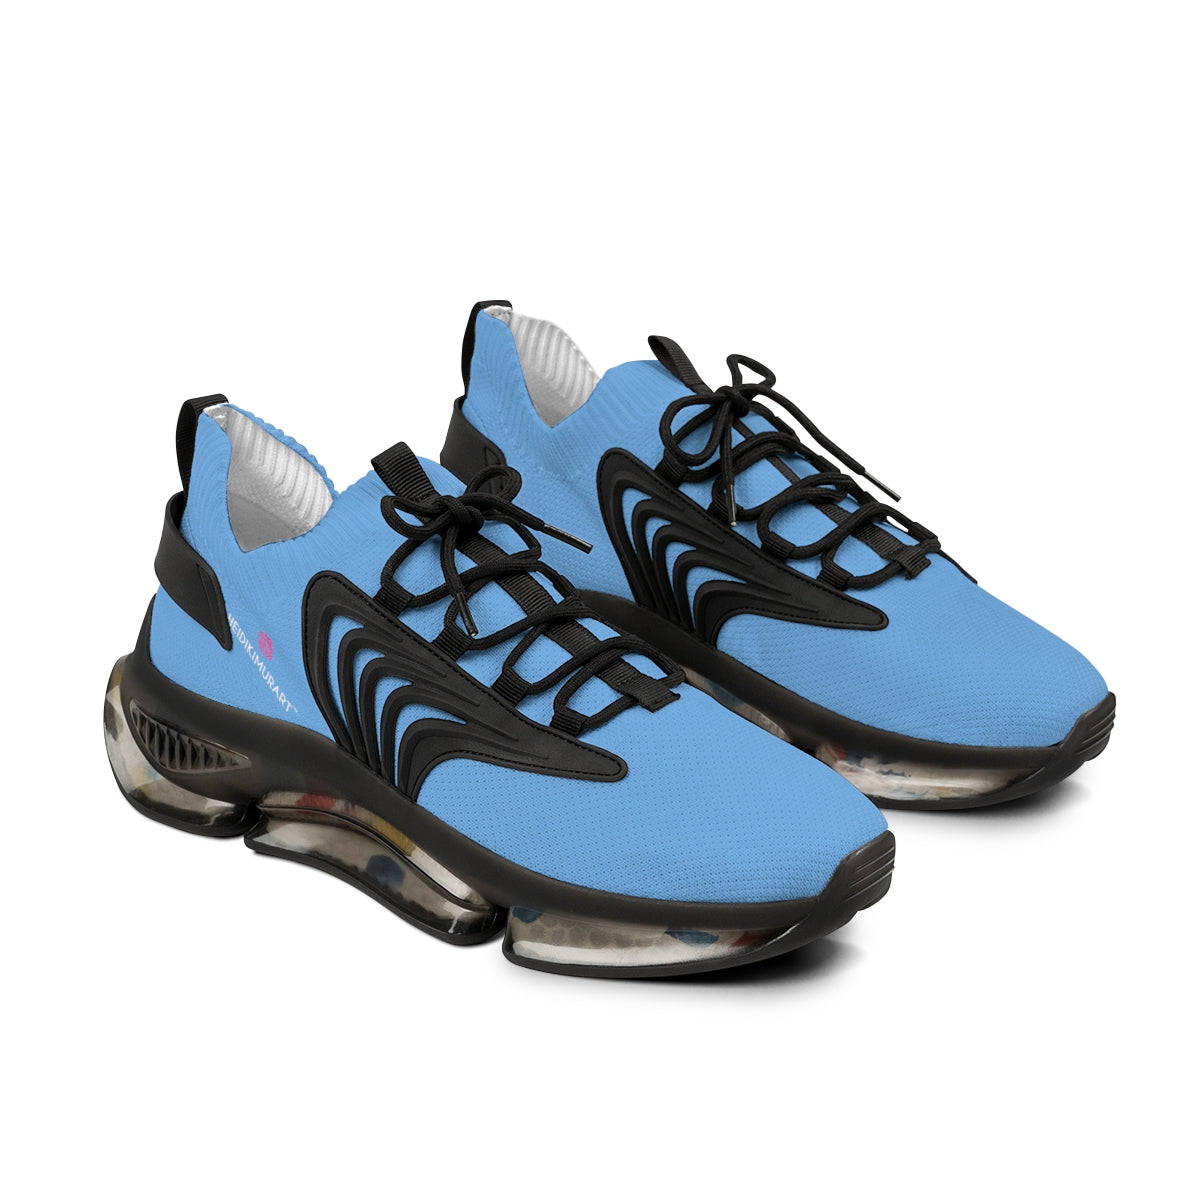 Pastel Blue Color Men's Shoes, Solid Blue Color Best Comfy Men's Mesh-Knit Designer Premium Laced Up Breathable Comfy Sports Sneakers Shoes (US Size: 5-12)